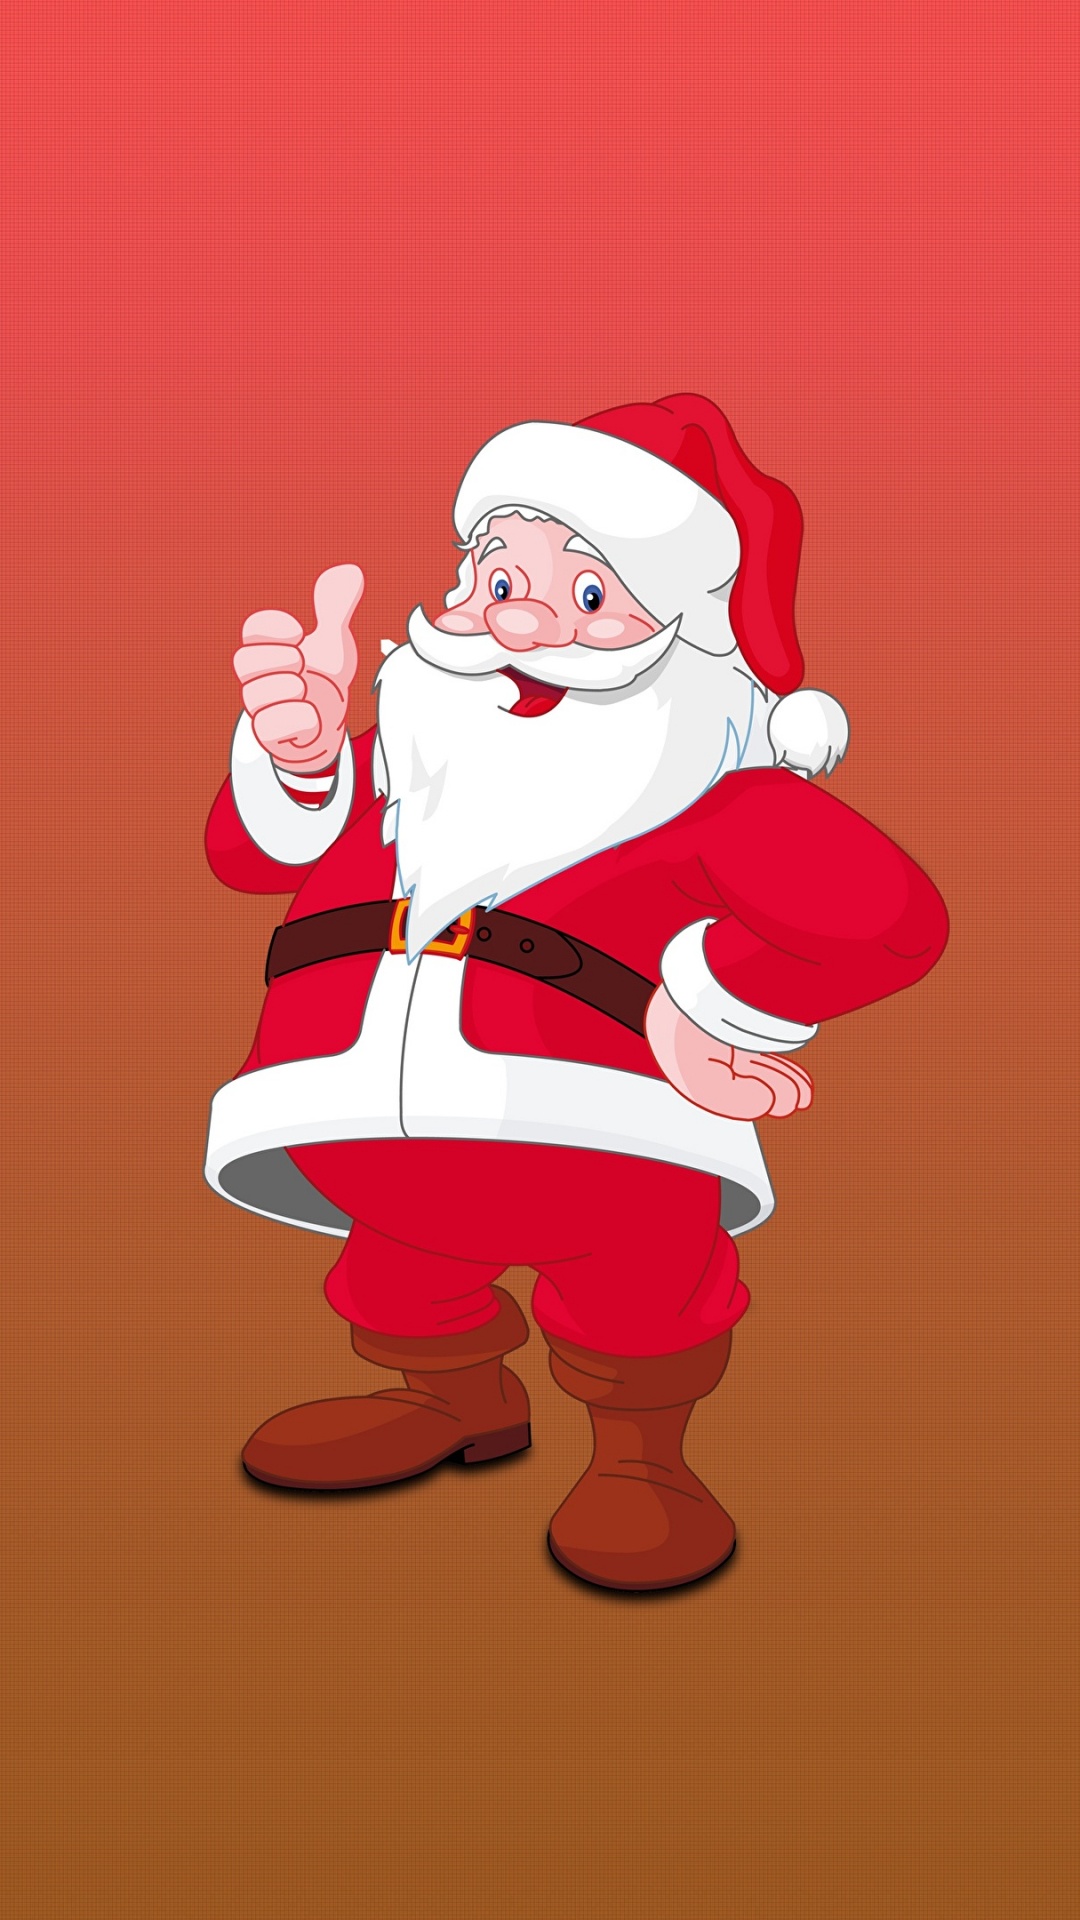 Weihnachtsmann, Illustration, Ded Moroz, Weihnachten, Kunst. Wallpaper in 1080x1920 Resolution